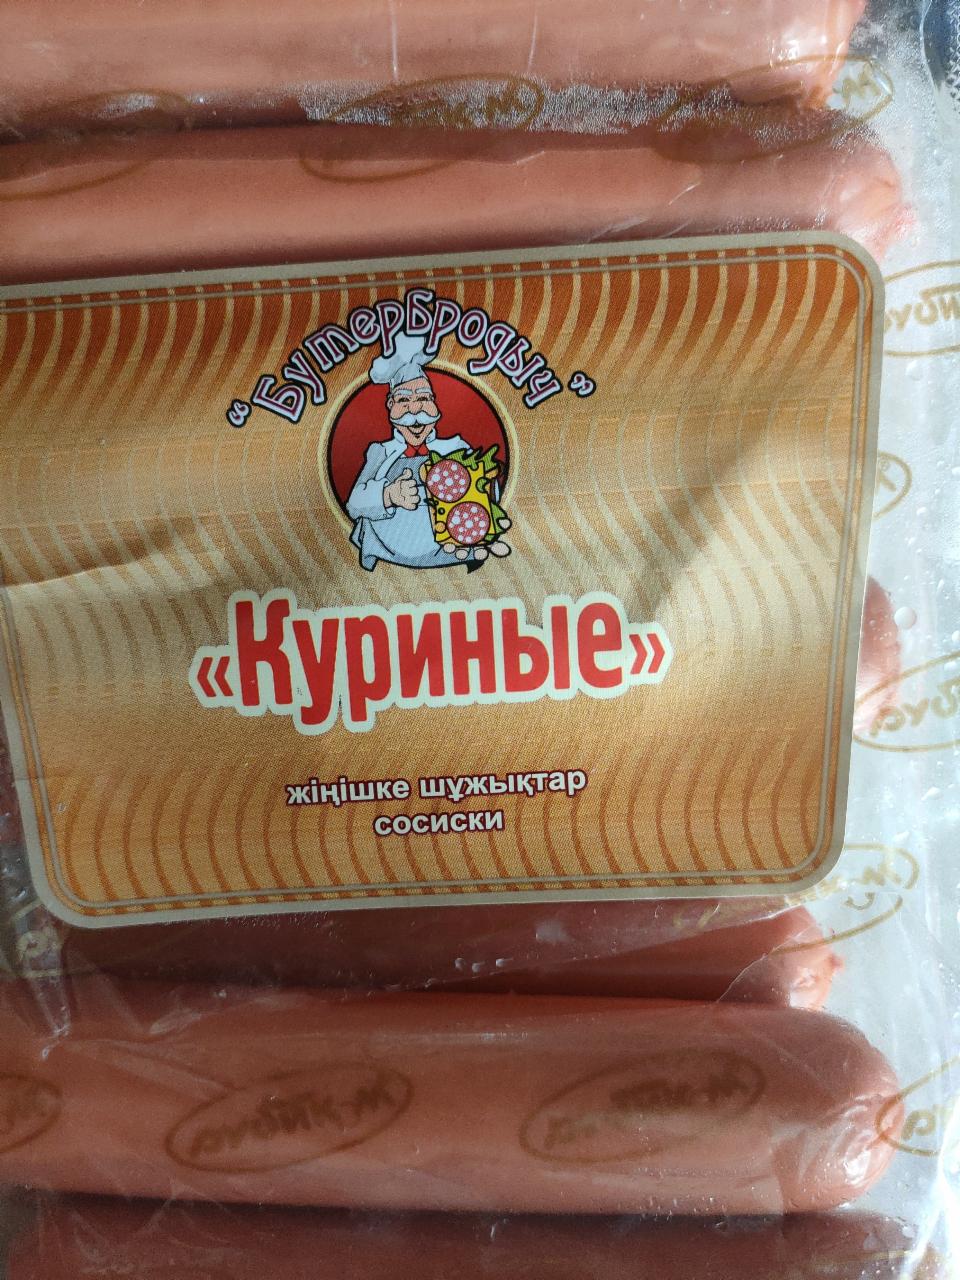 Фото - сосиски куриные рубиком Бутербродыч